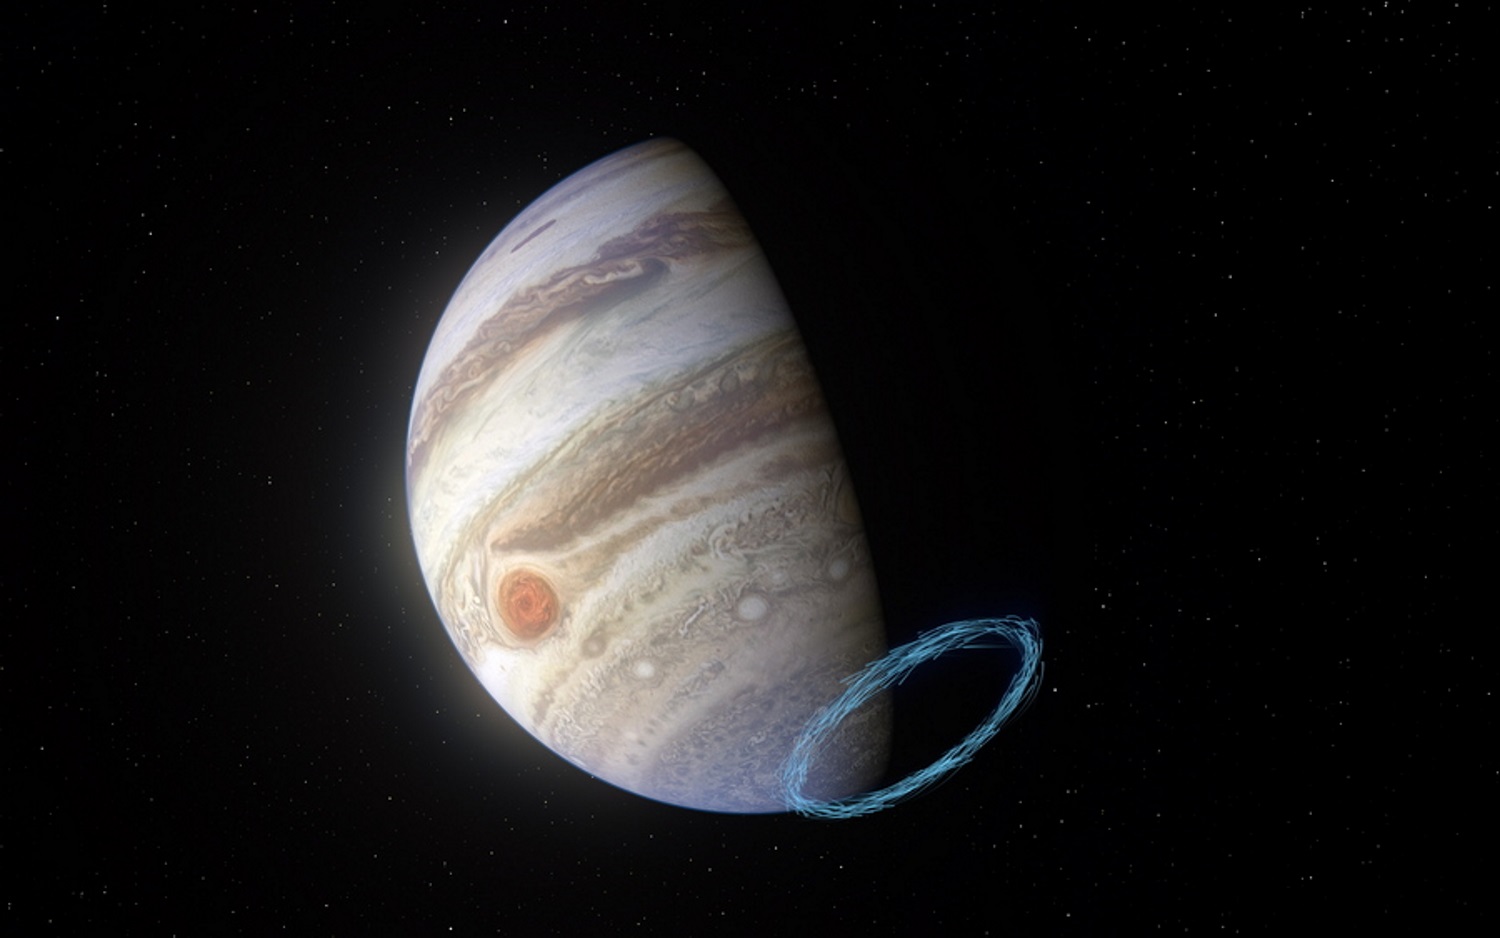 Βαγγέλης Παπαθανασίου: Η μουσική του «ταξιδεύει» στον Δία με το Juno της NASA